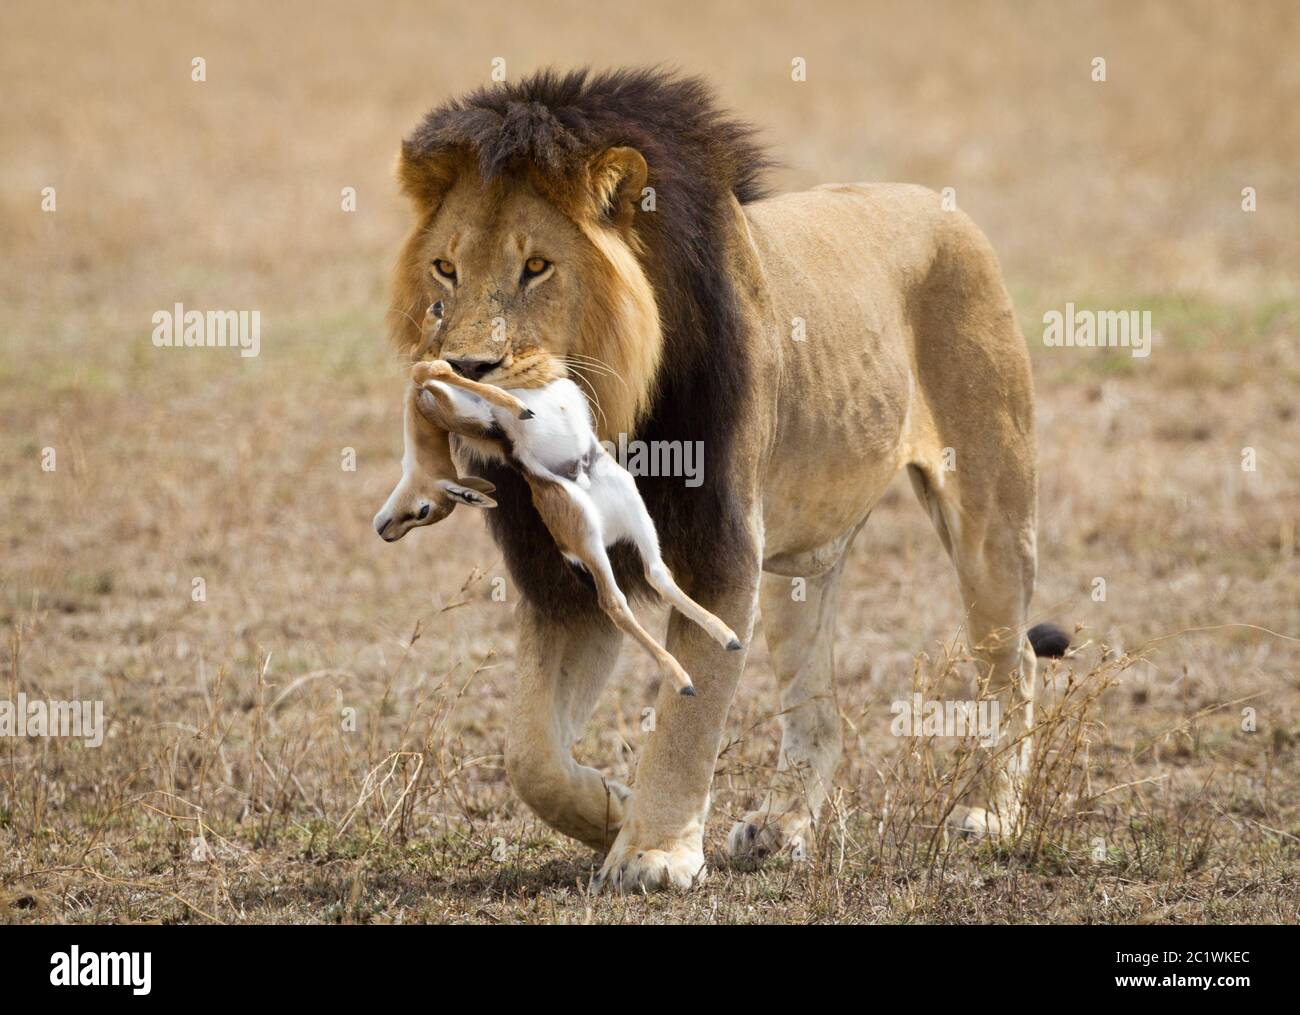 Ein erwachsener männlicher Löwe mit großer dunkler Mähne, der seinen Tod im Serengeti Nationalpark Tansania trägt Stockfoto